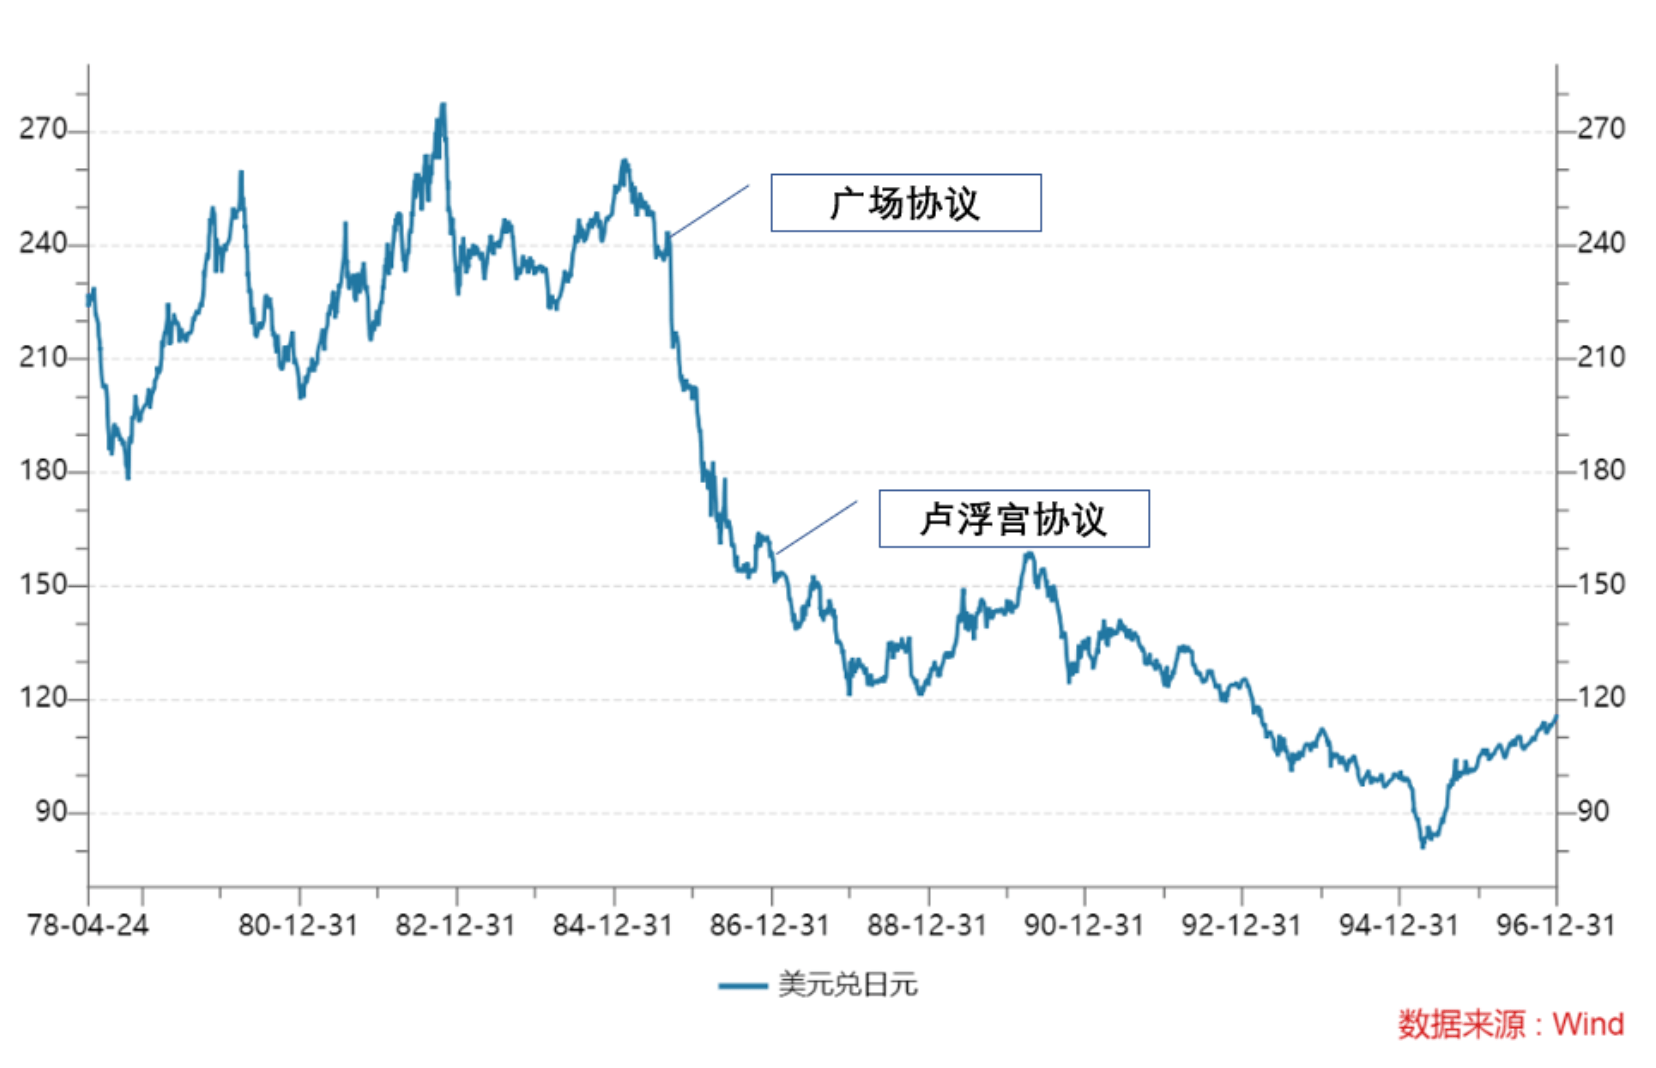 日元贬值，日本寻求美国“协同干预汇率”，但被耶伦拒绝了？